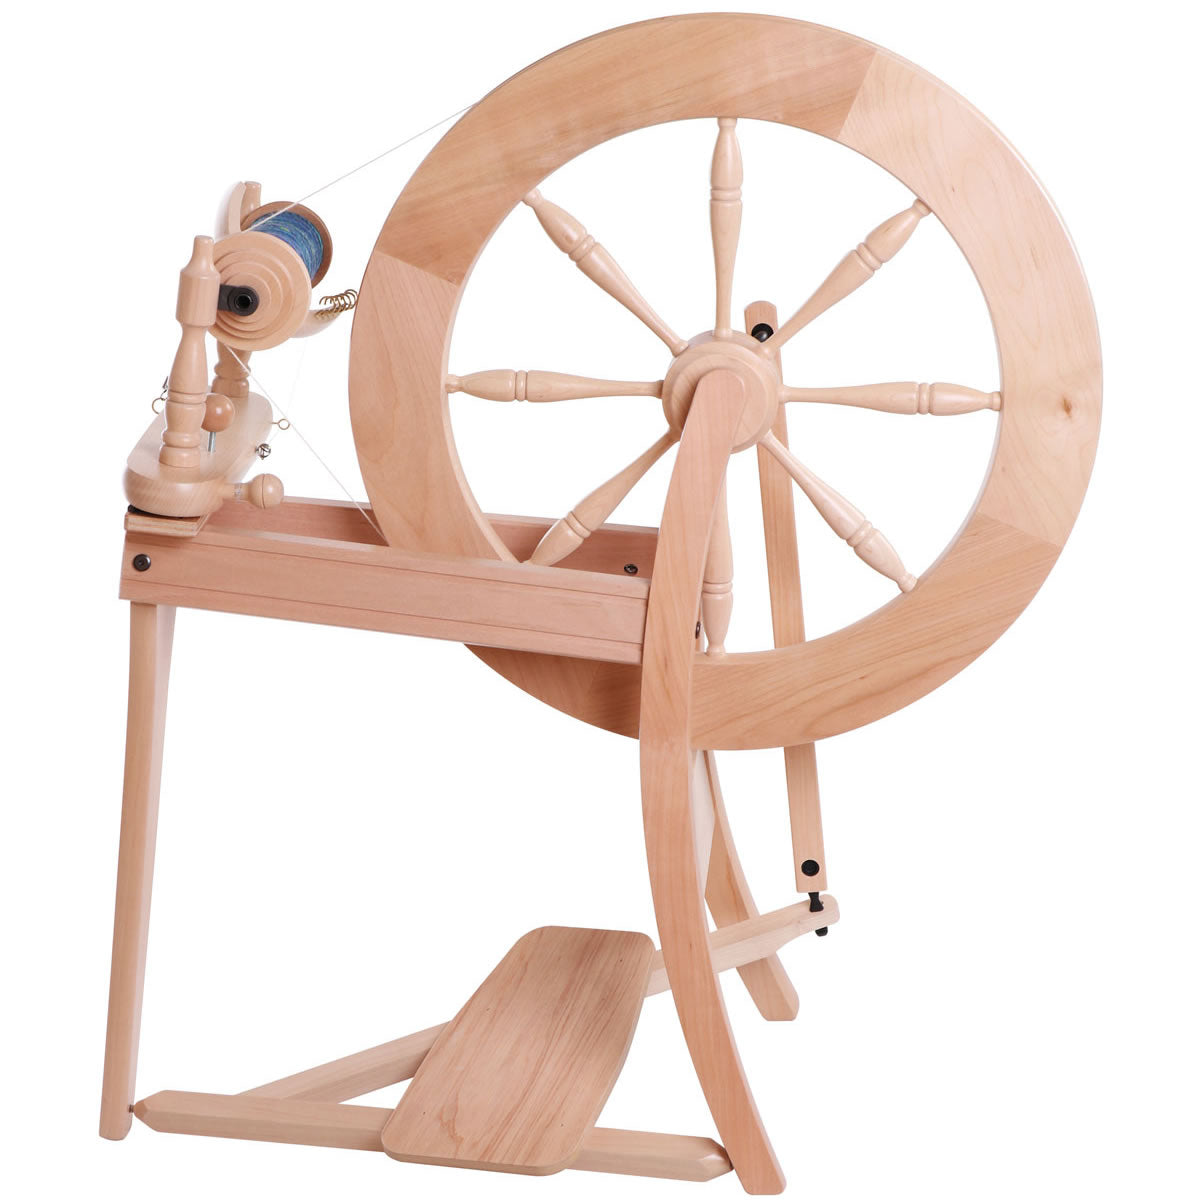 ashford traditional spinning wheel at fibrehut